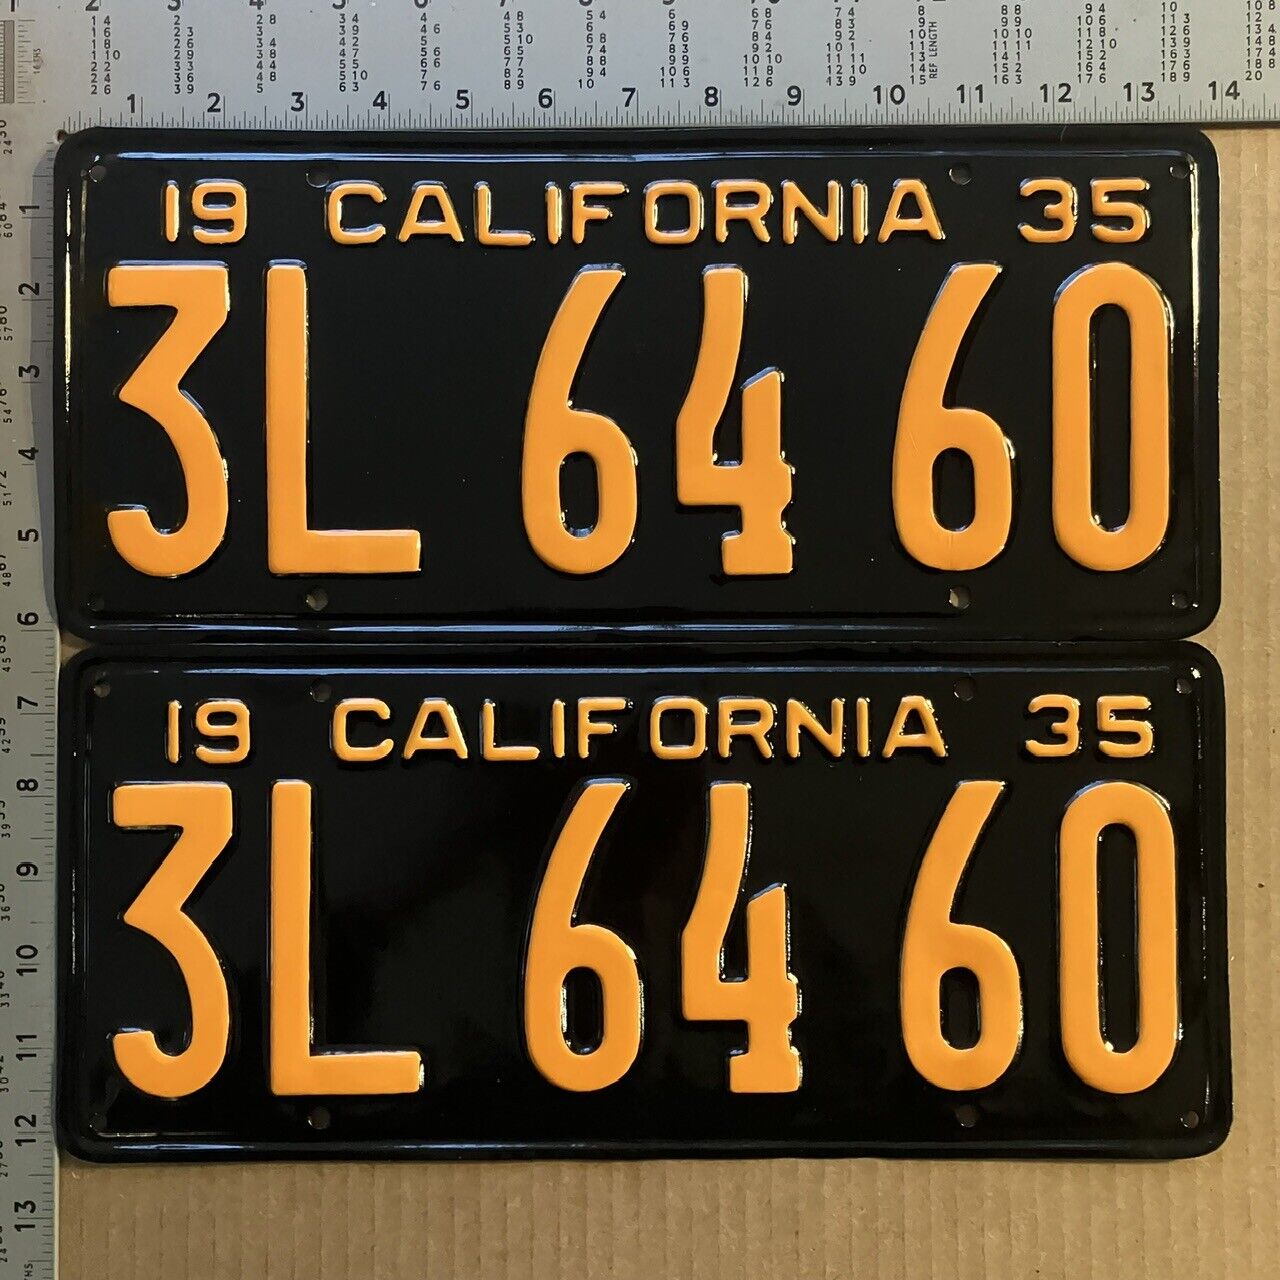 1935 California license plate pair 3L 6460 YOM DMV SHOW CAR READY 13770